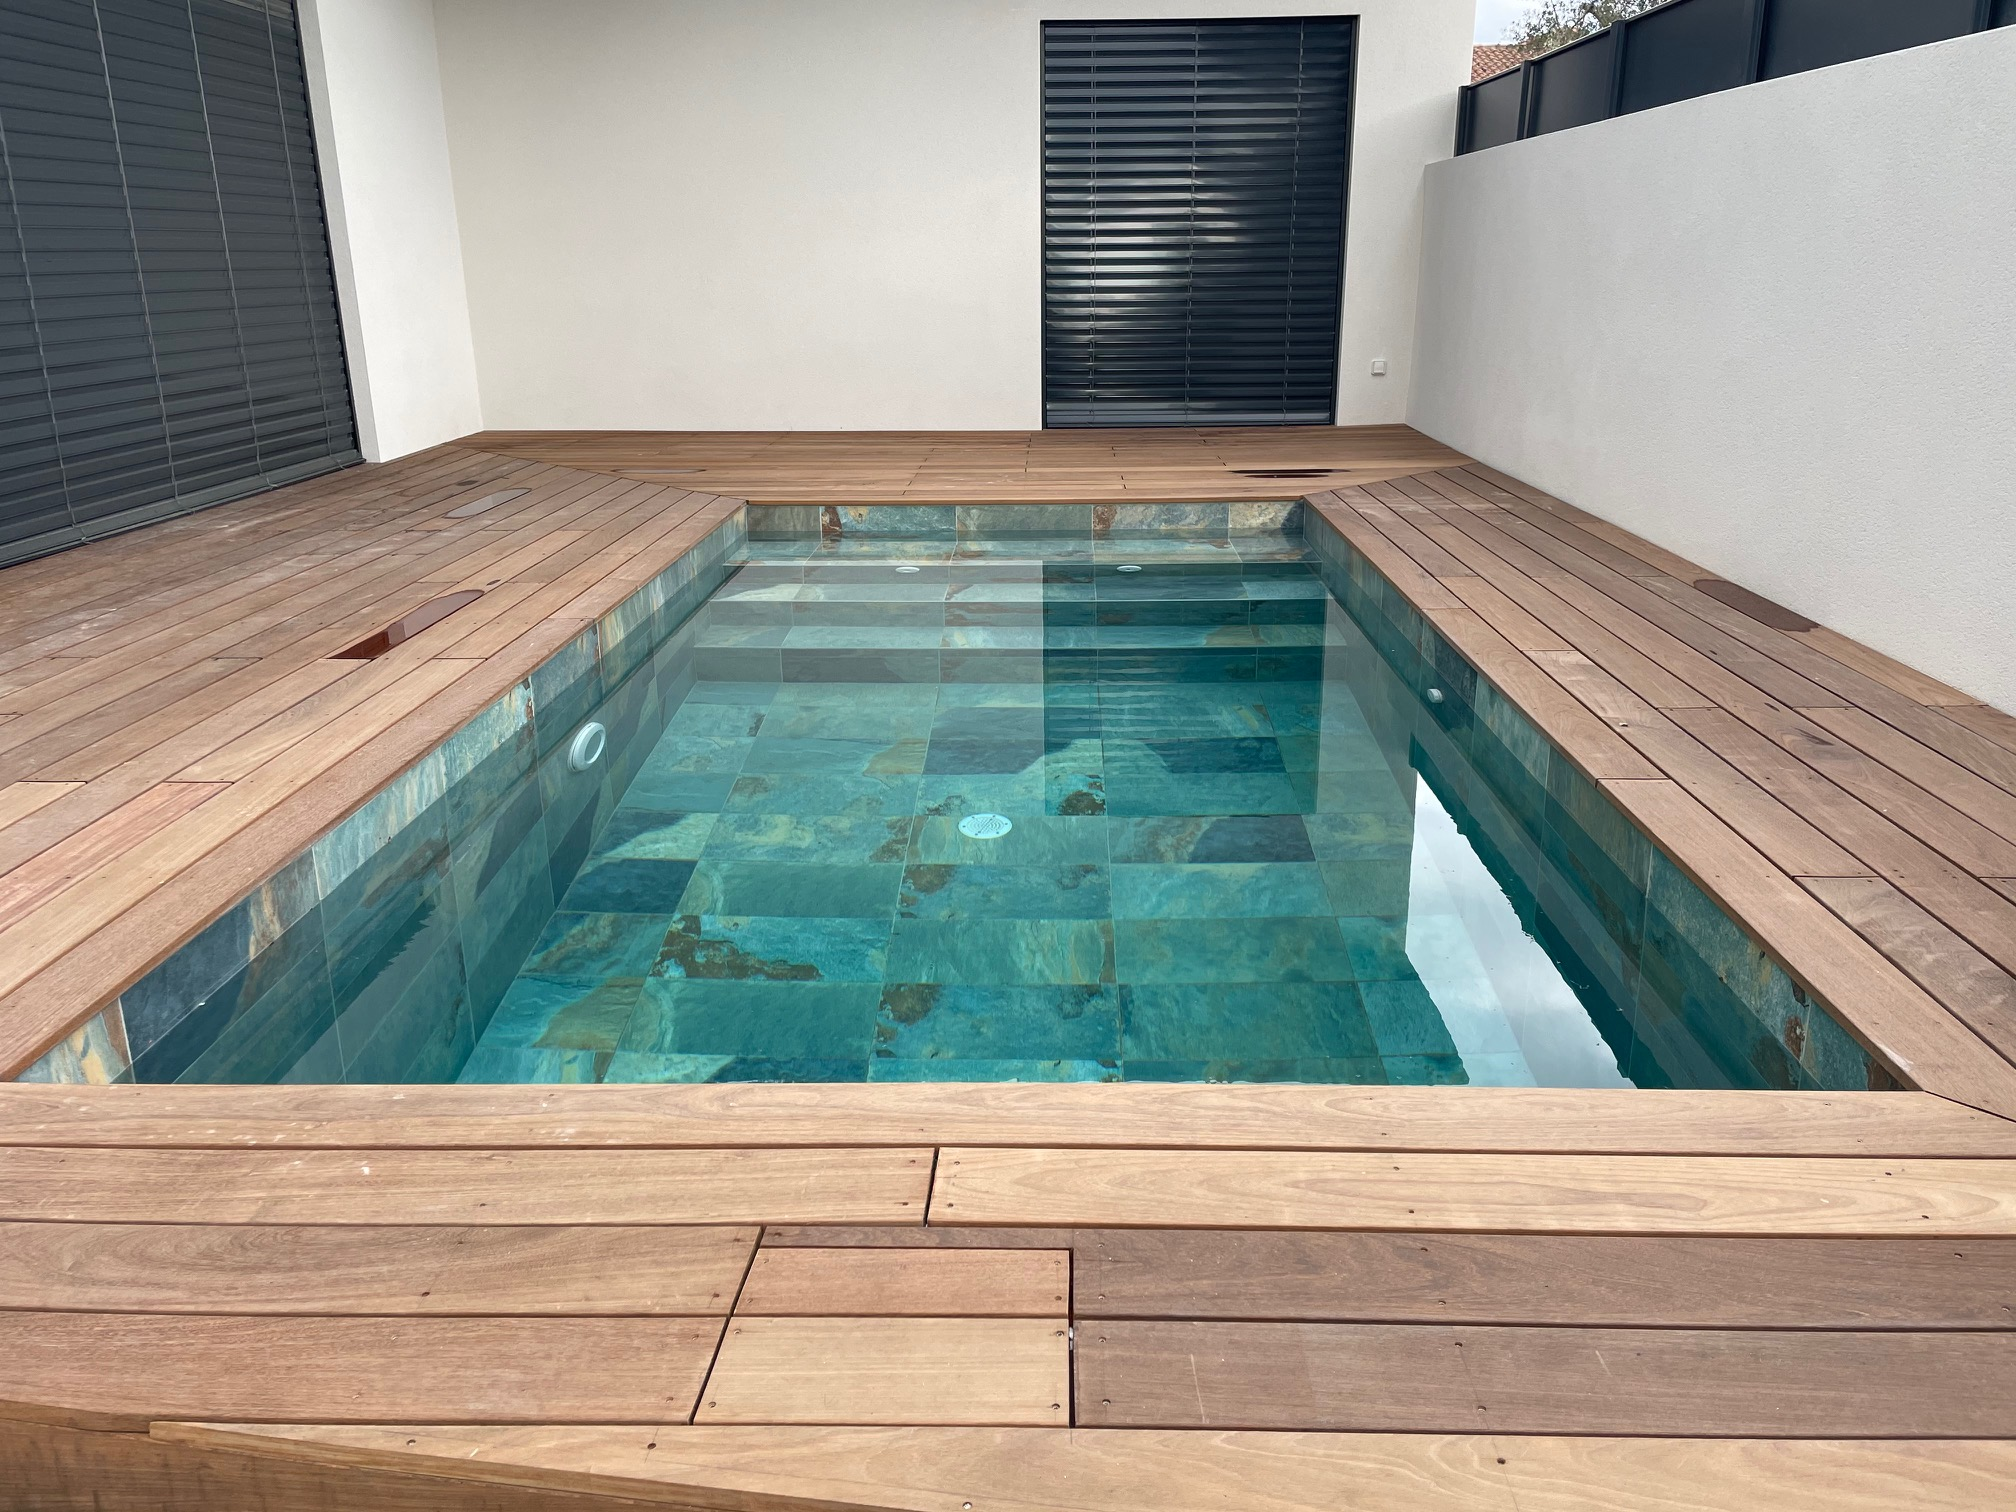 Lot de 8.64 m² - Carrelage piscine effet pierre naturelle OXFORD BALI VERT 30x60 cm R9 - 8.64 m² - 3